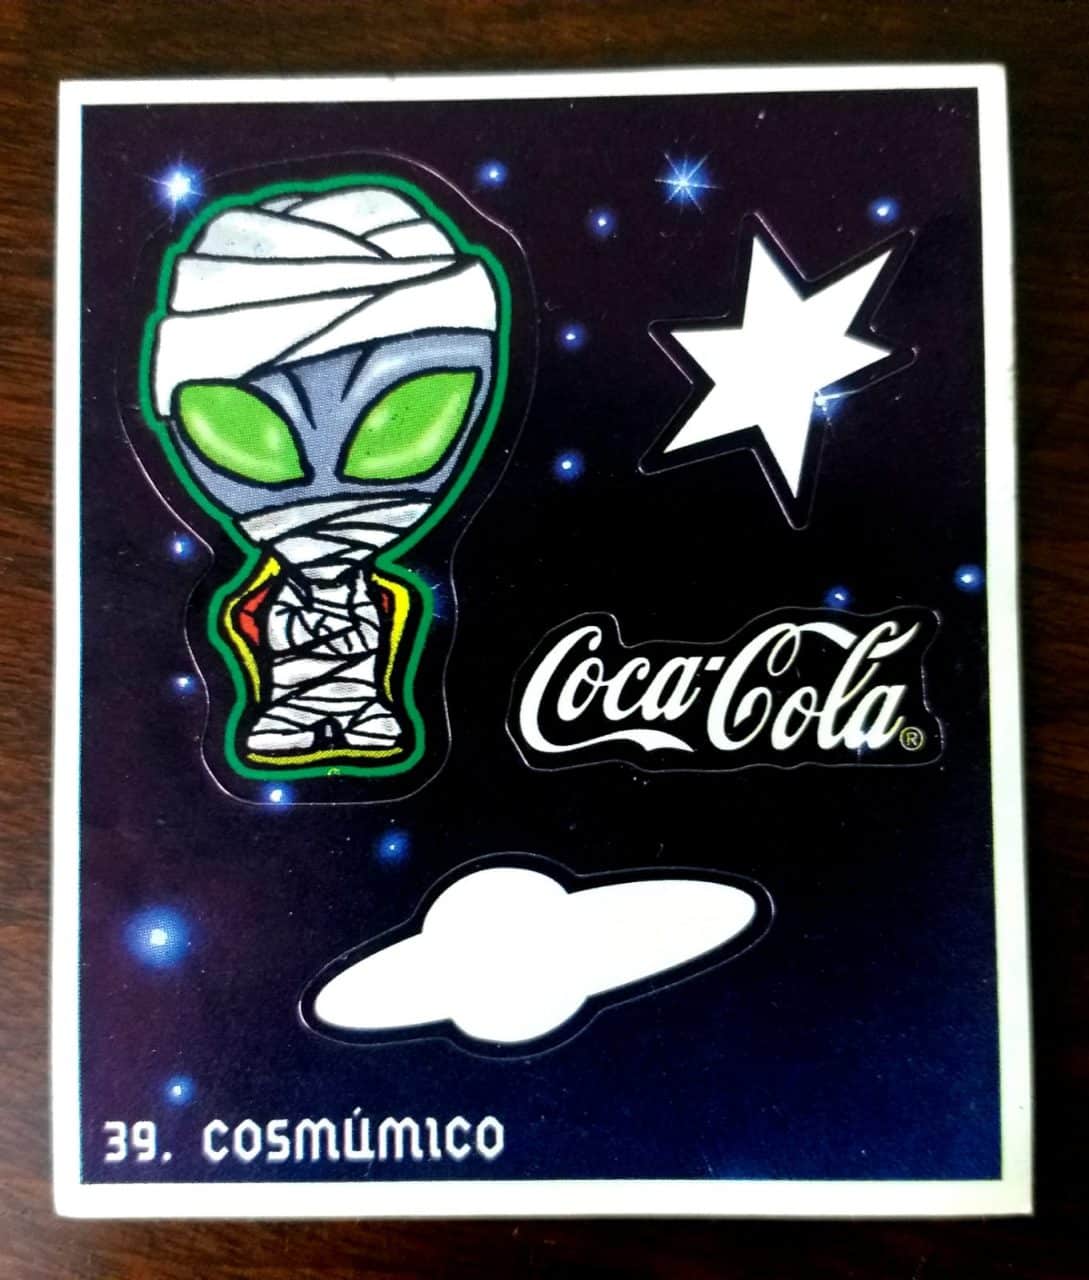 Gelo-Cósmicos Coca Cola Cards Coleção Completa ano 2000 #Nostalgia